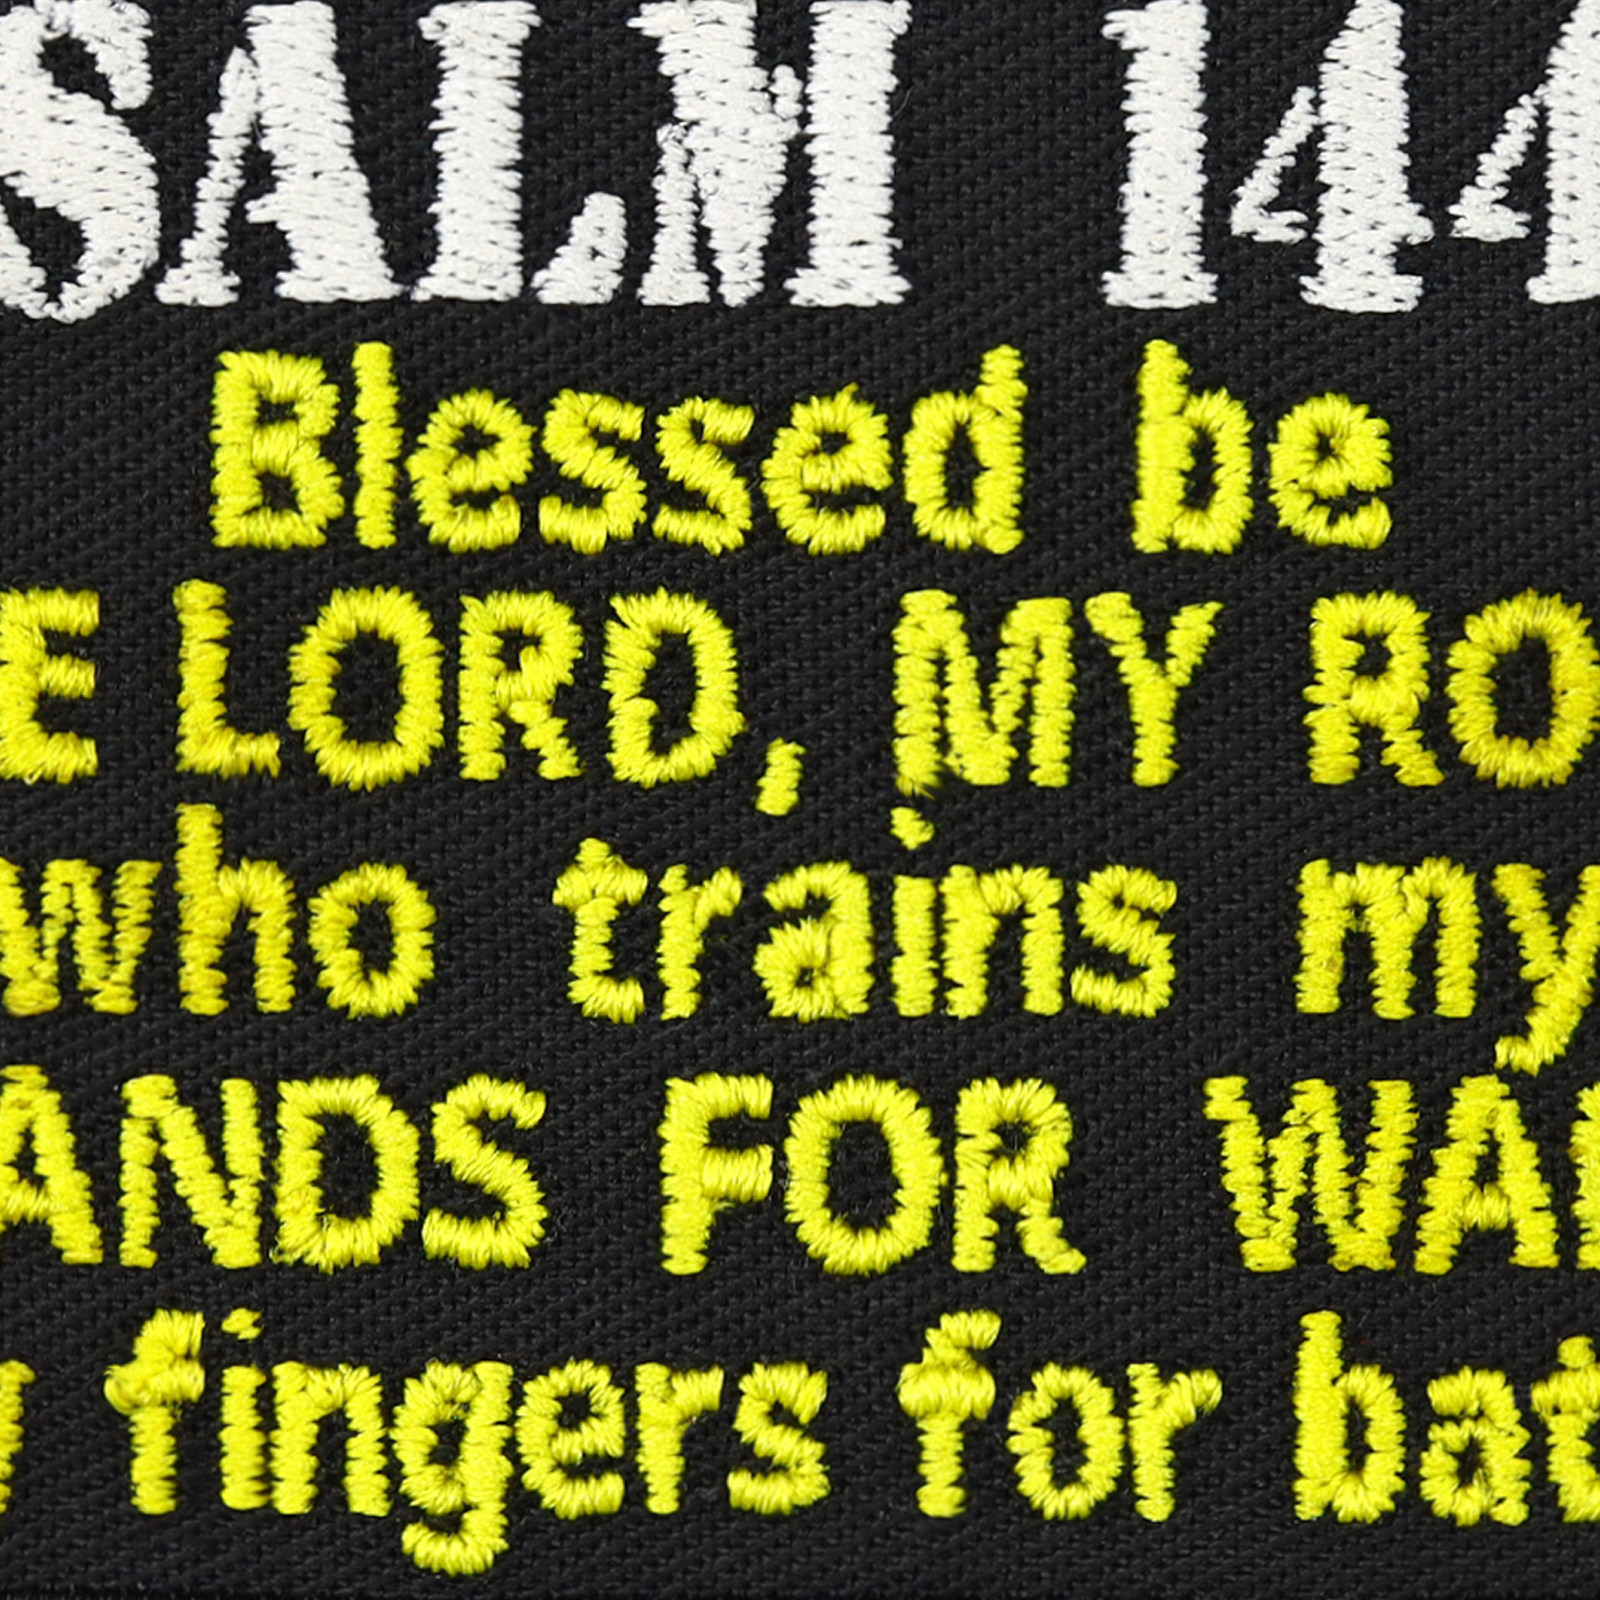 Psalm 144:1 - Patch